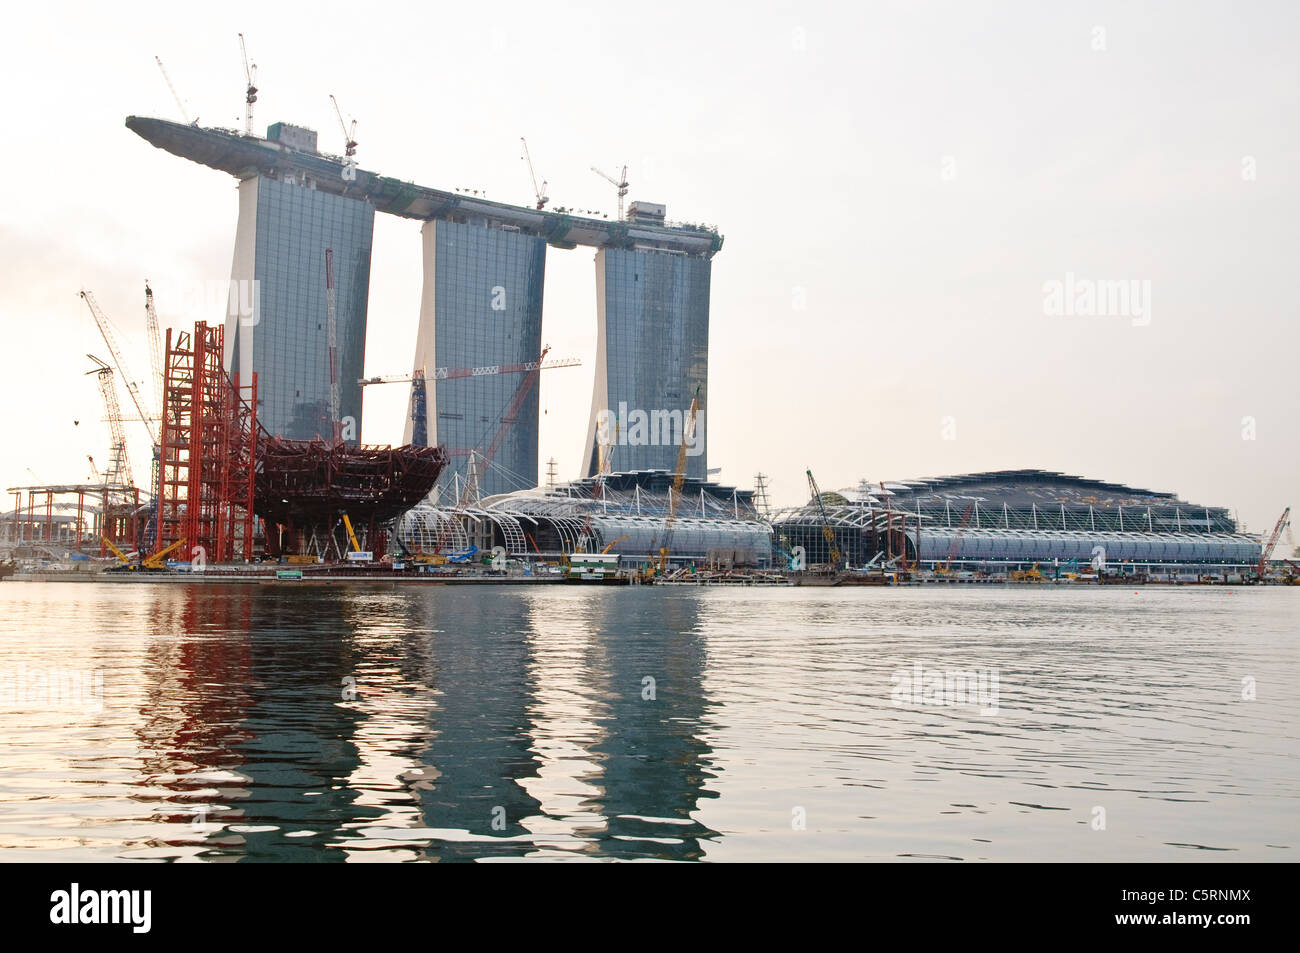 La nouvelle Marina Bay Sands, avec centre des congrès, casino, cinémas, et un musée hotel, Singapore Banque D'Images